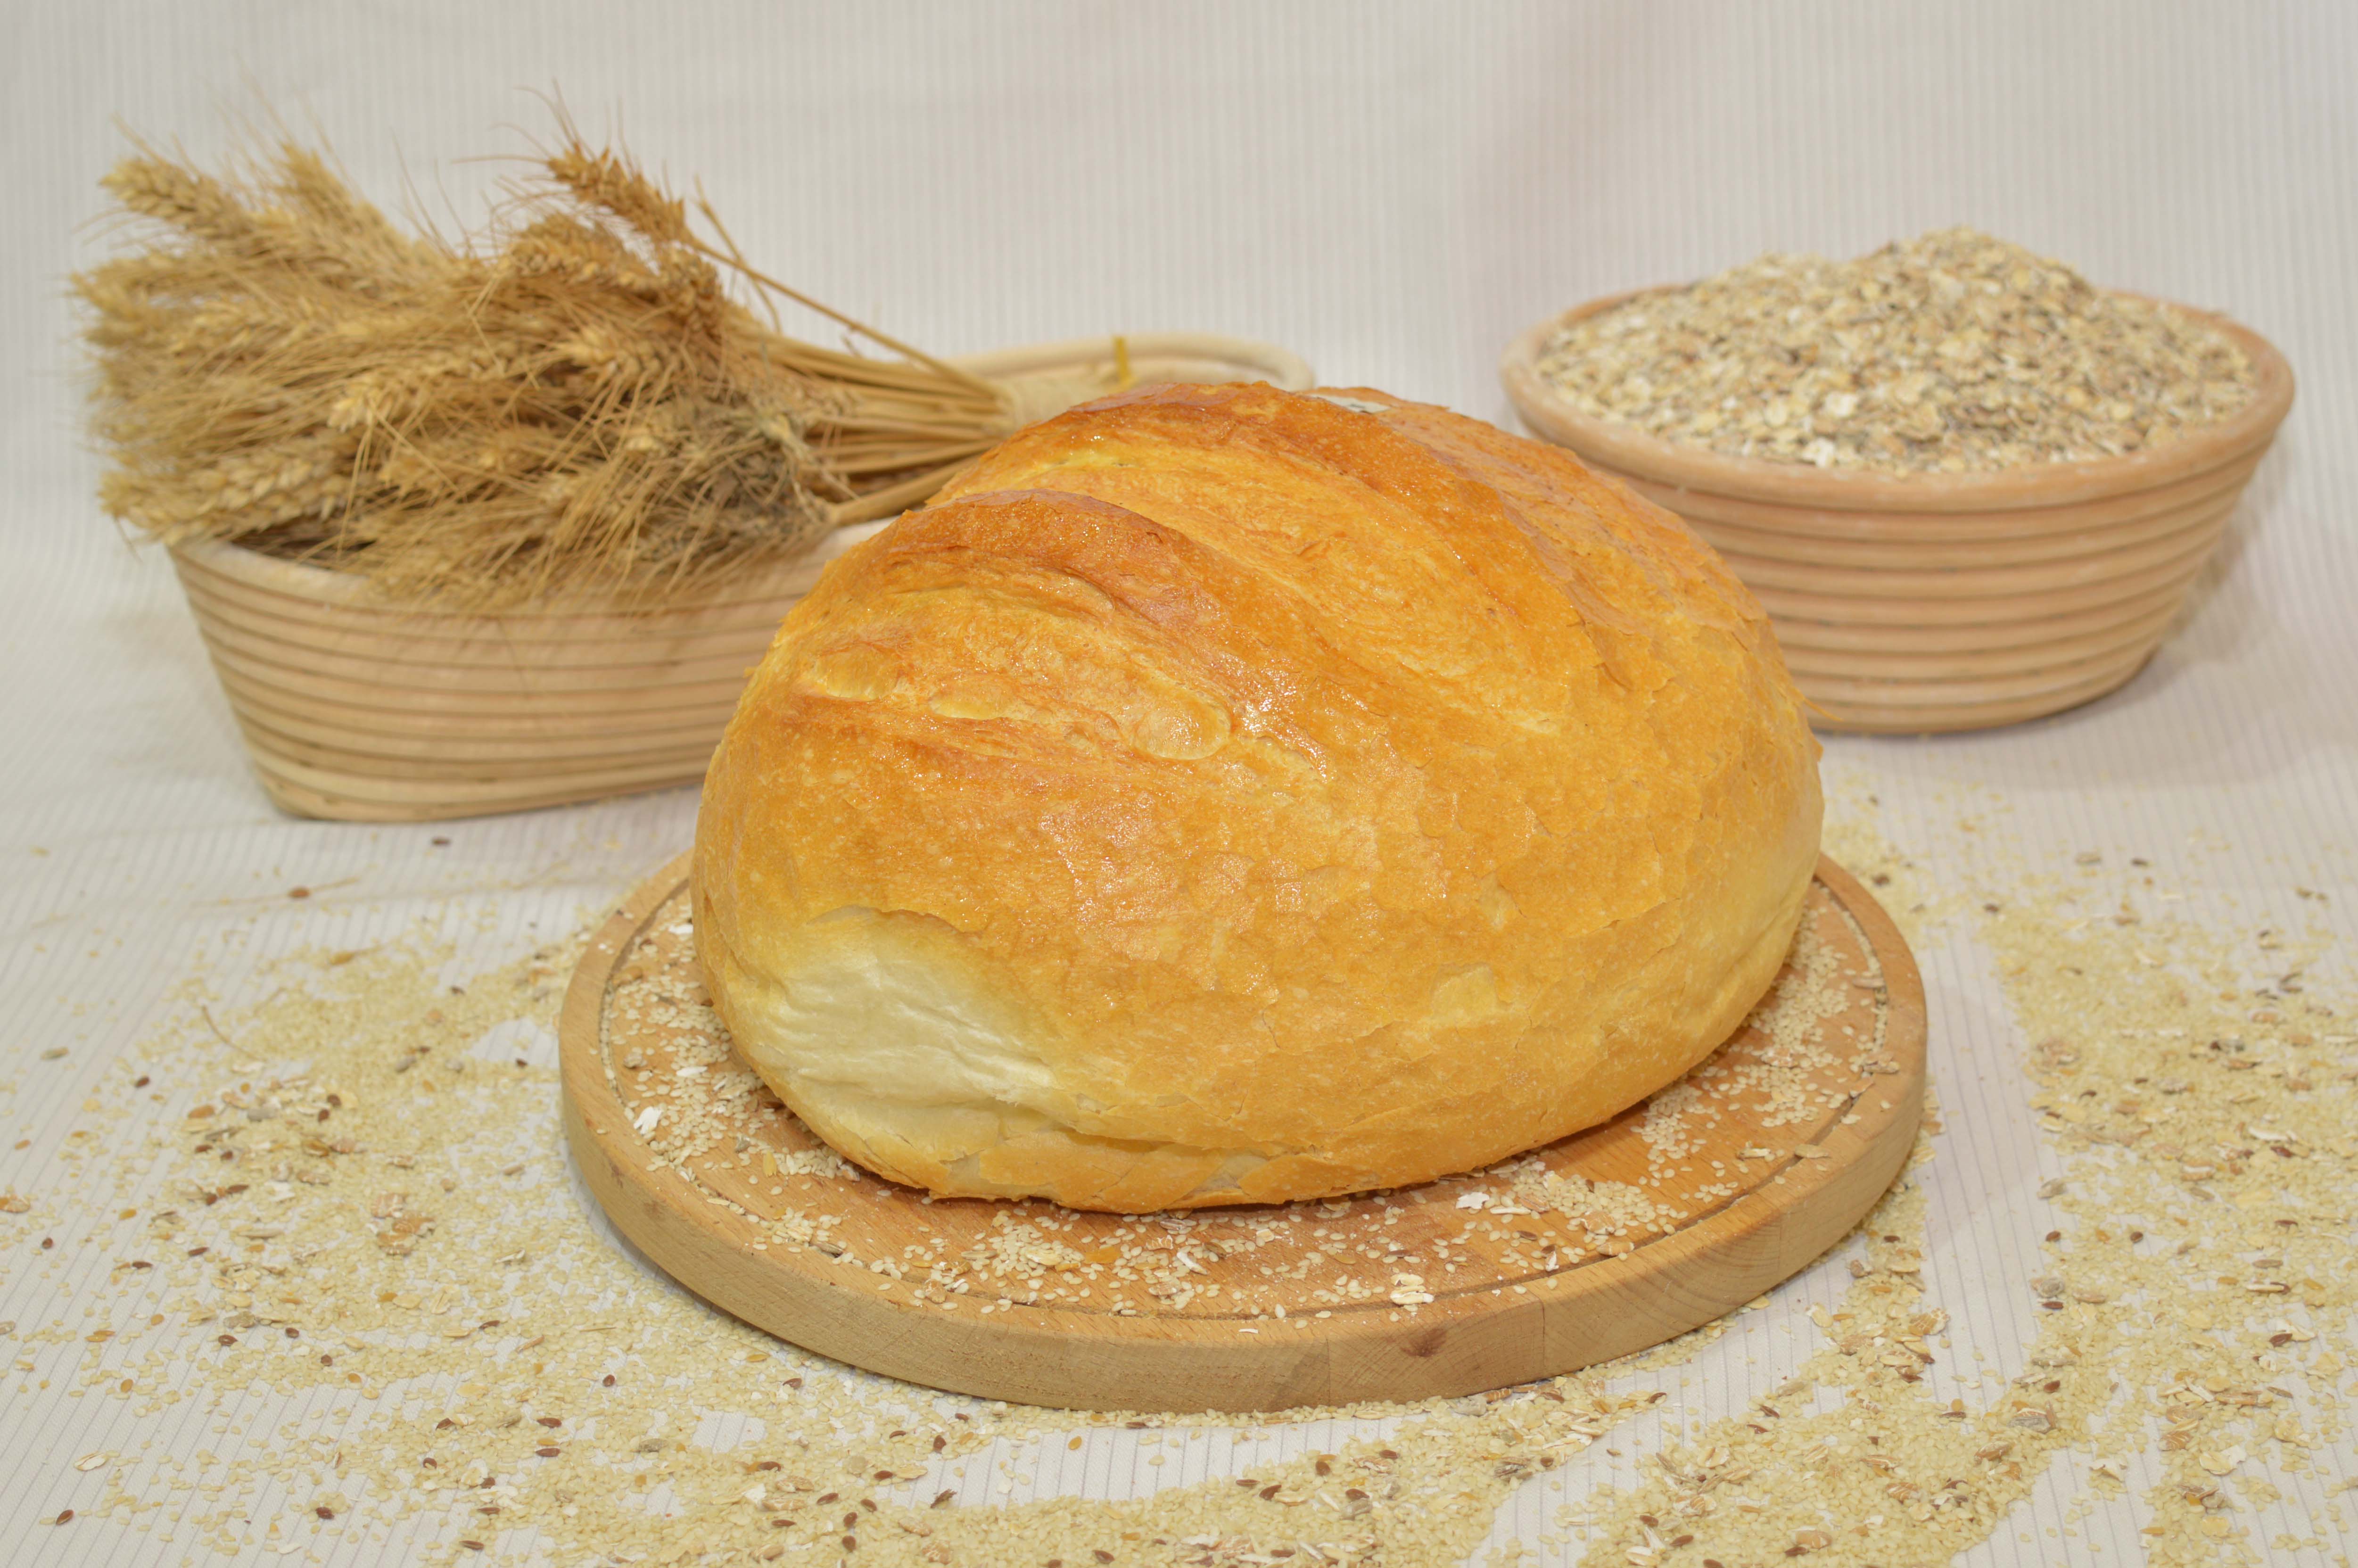 paraszt kenyér, papp pékség, pékáru, mezőkövesd